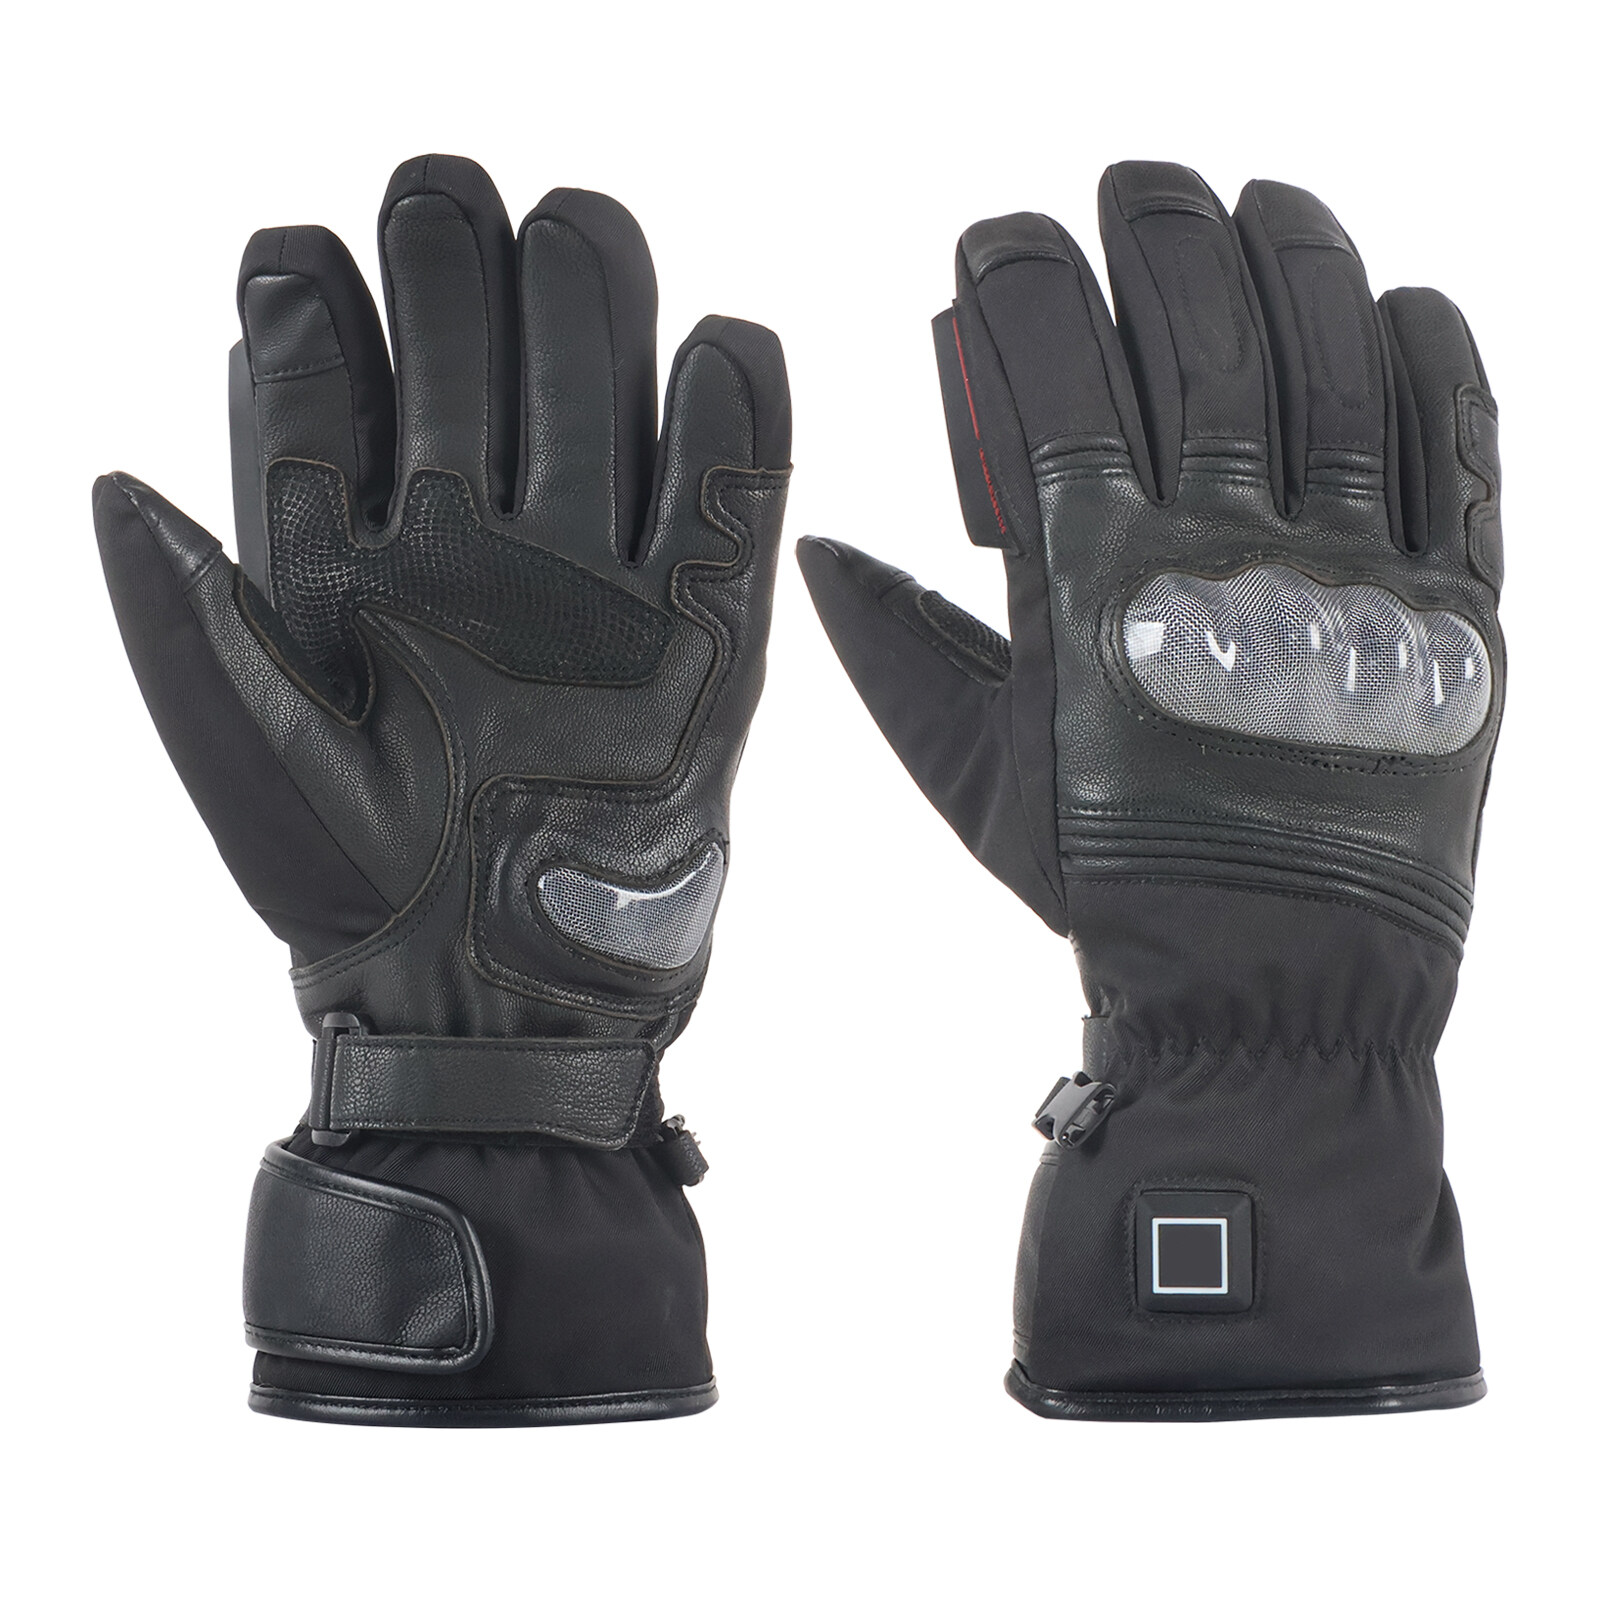 Motorcycle gloves in black